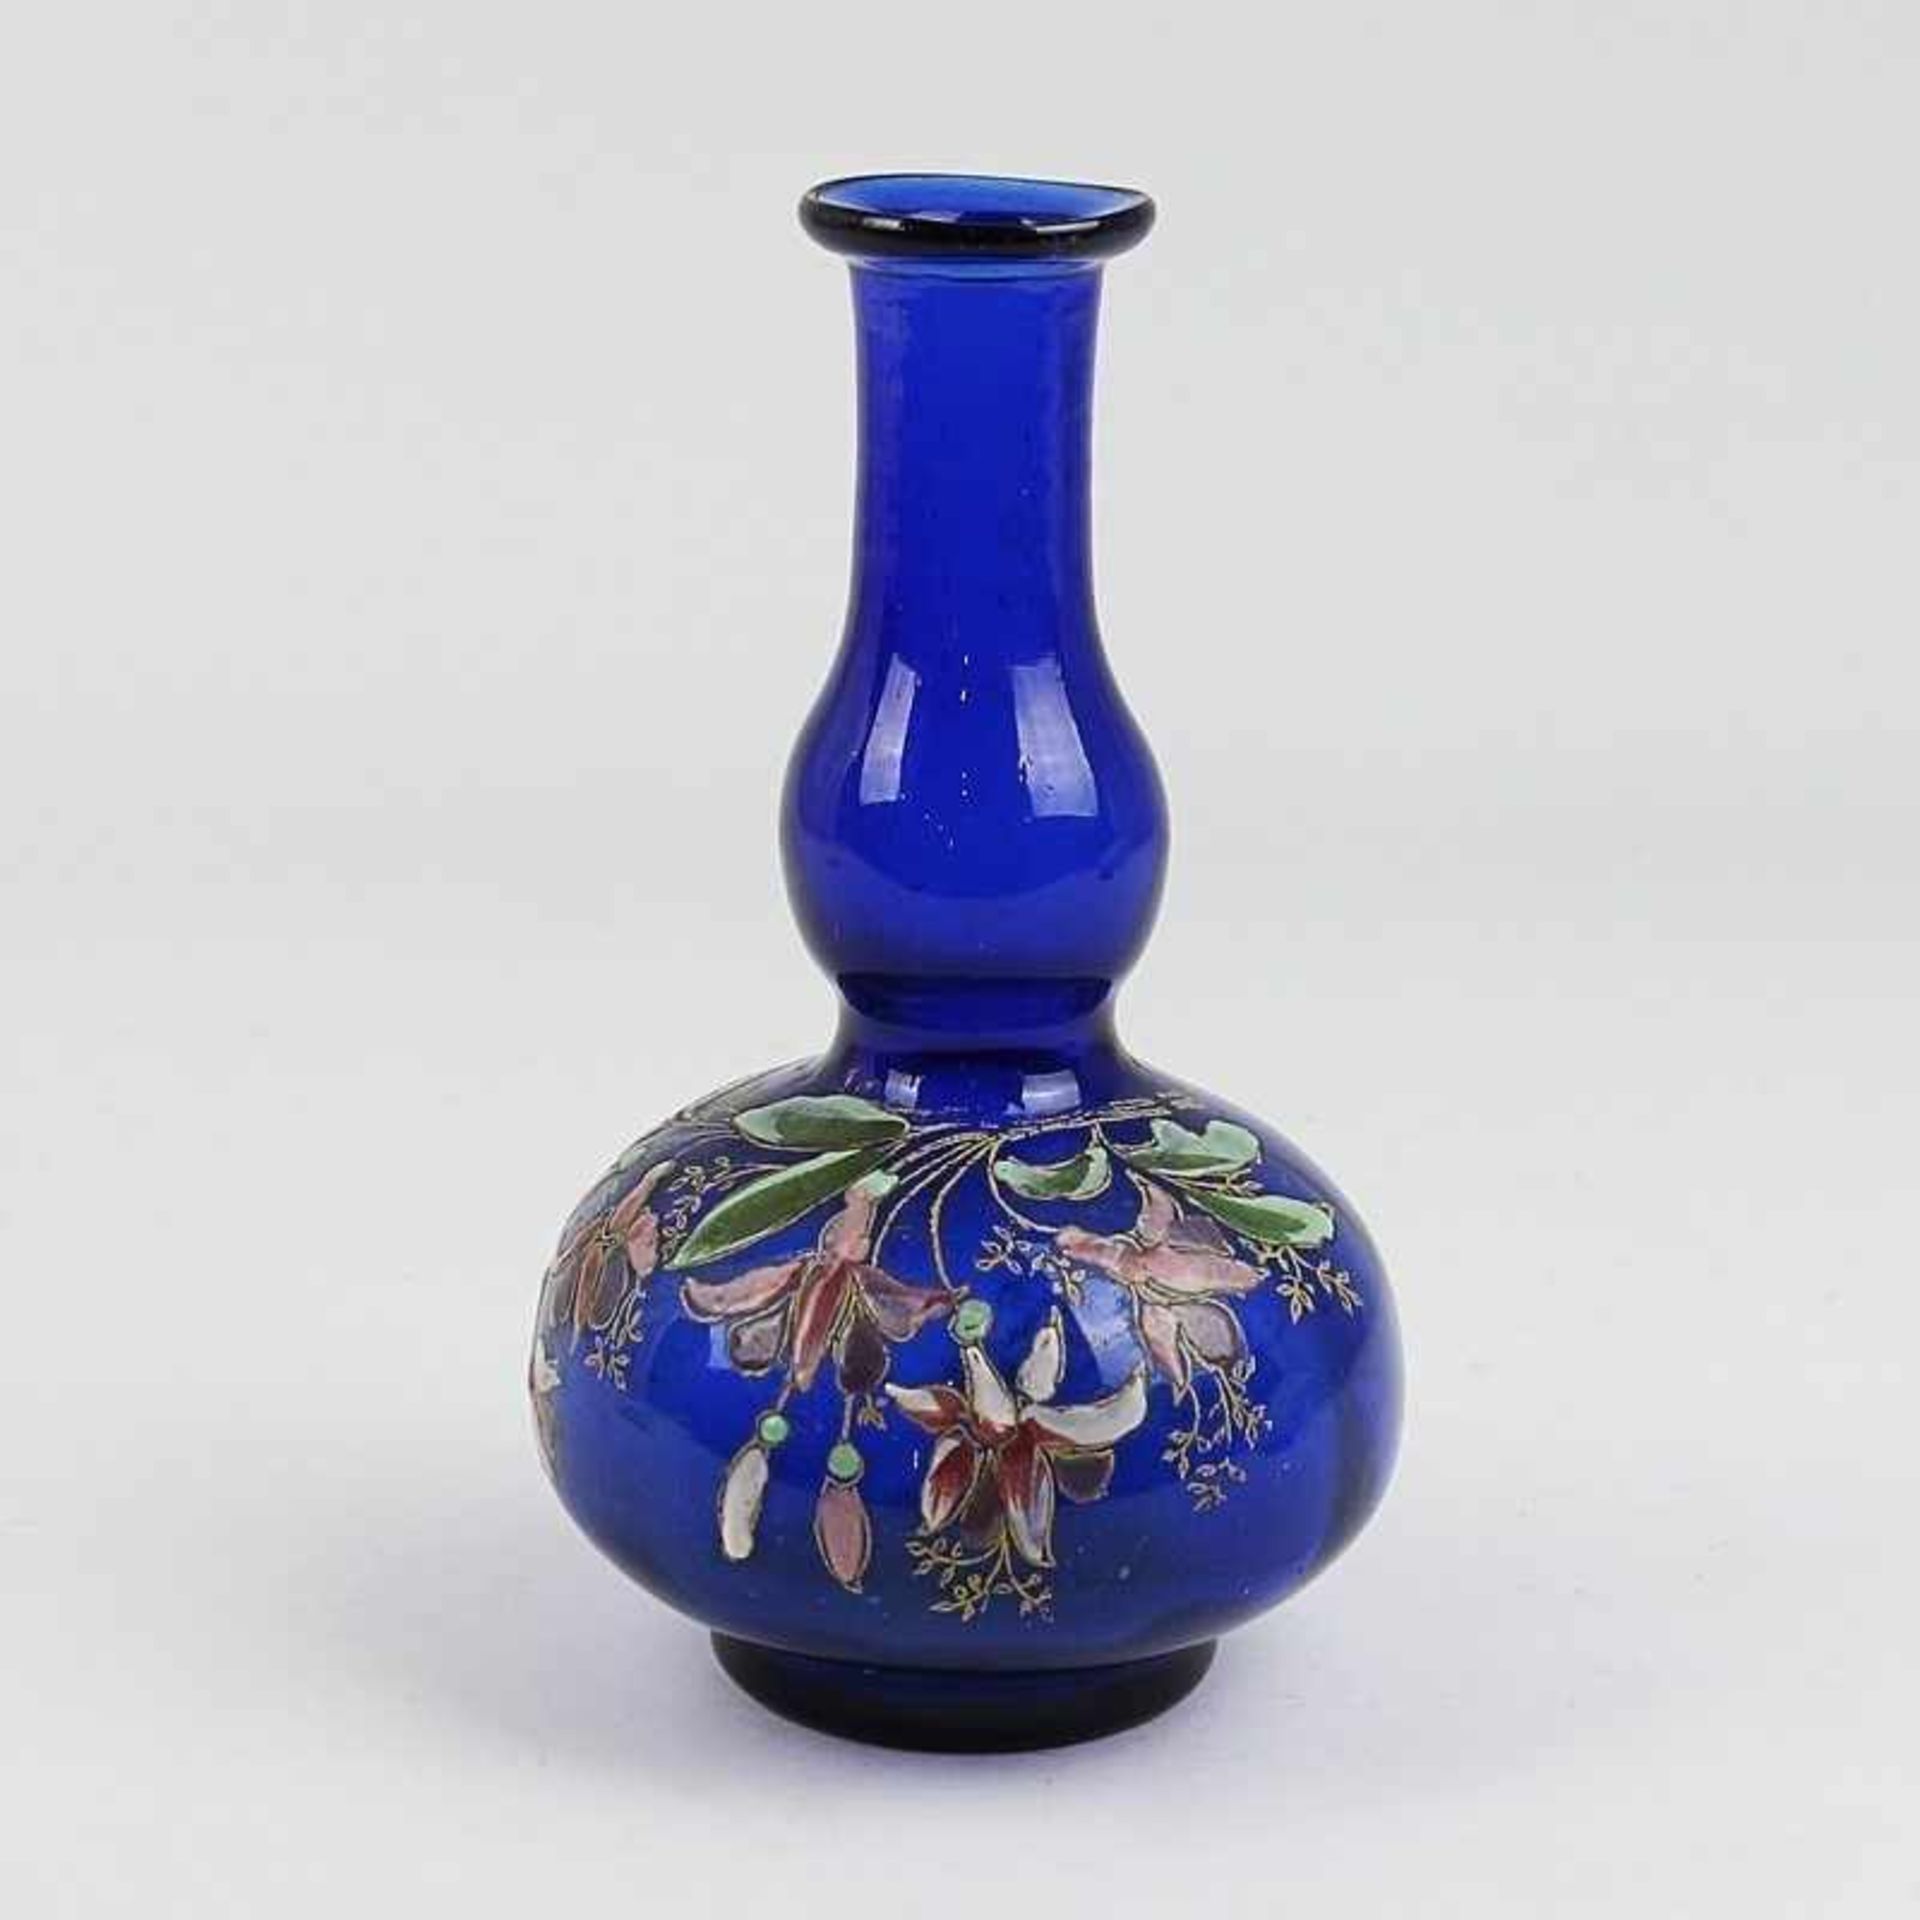 Legras - Vase um 1900, wohl Legras & Cie, Verreries de Saìnt-Denis, blaues Glas,